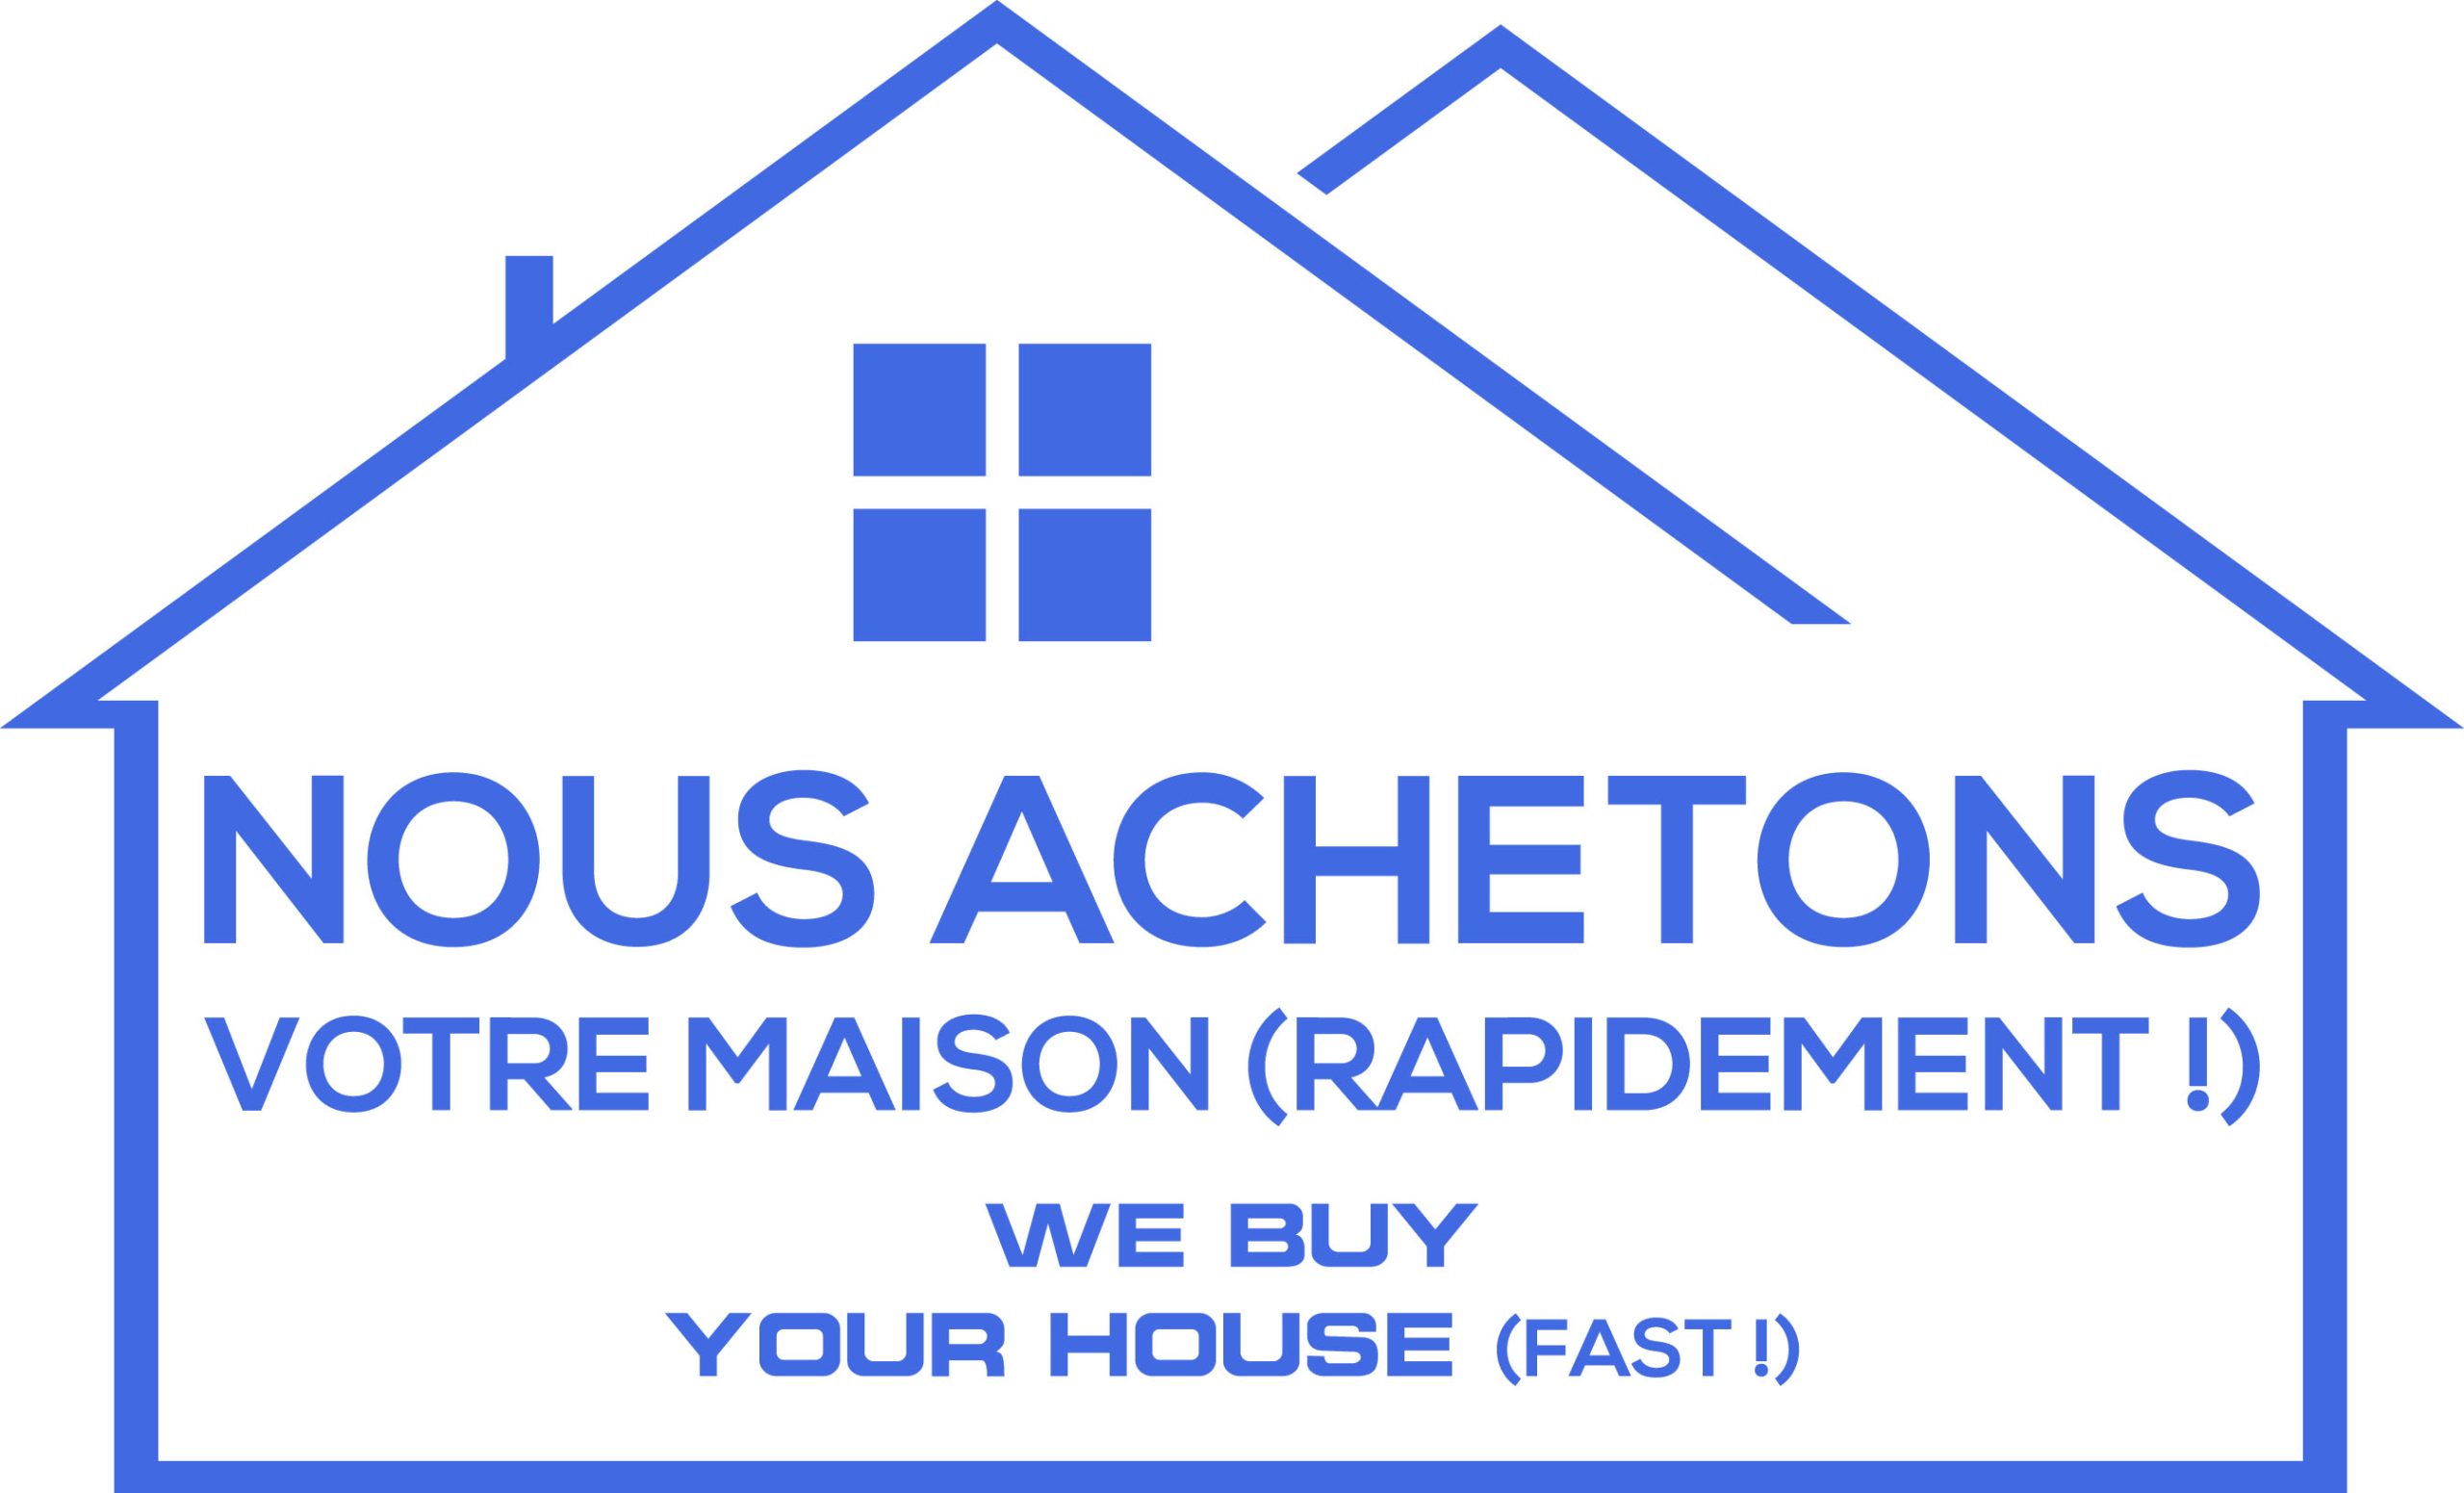 Nous achetons votre maison (rapidement!) Inc.